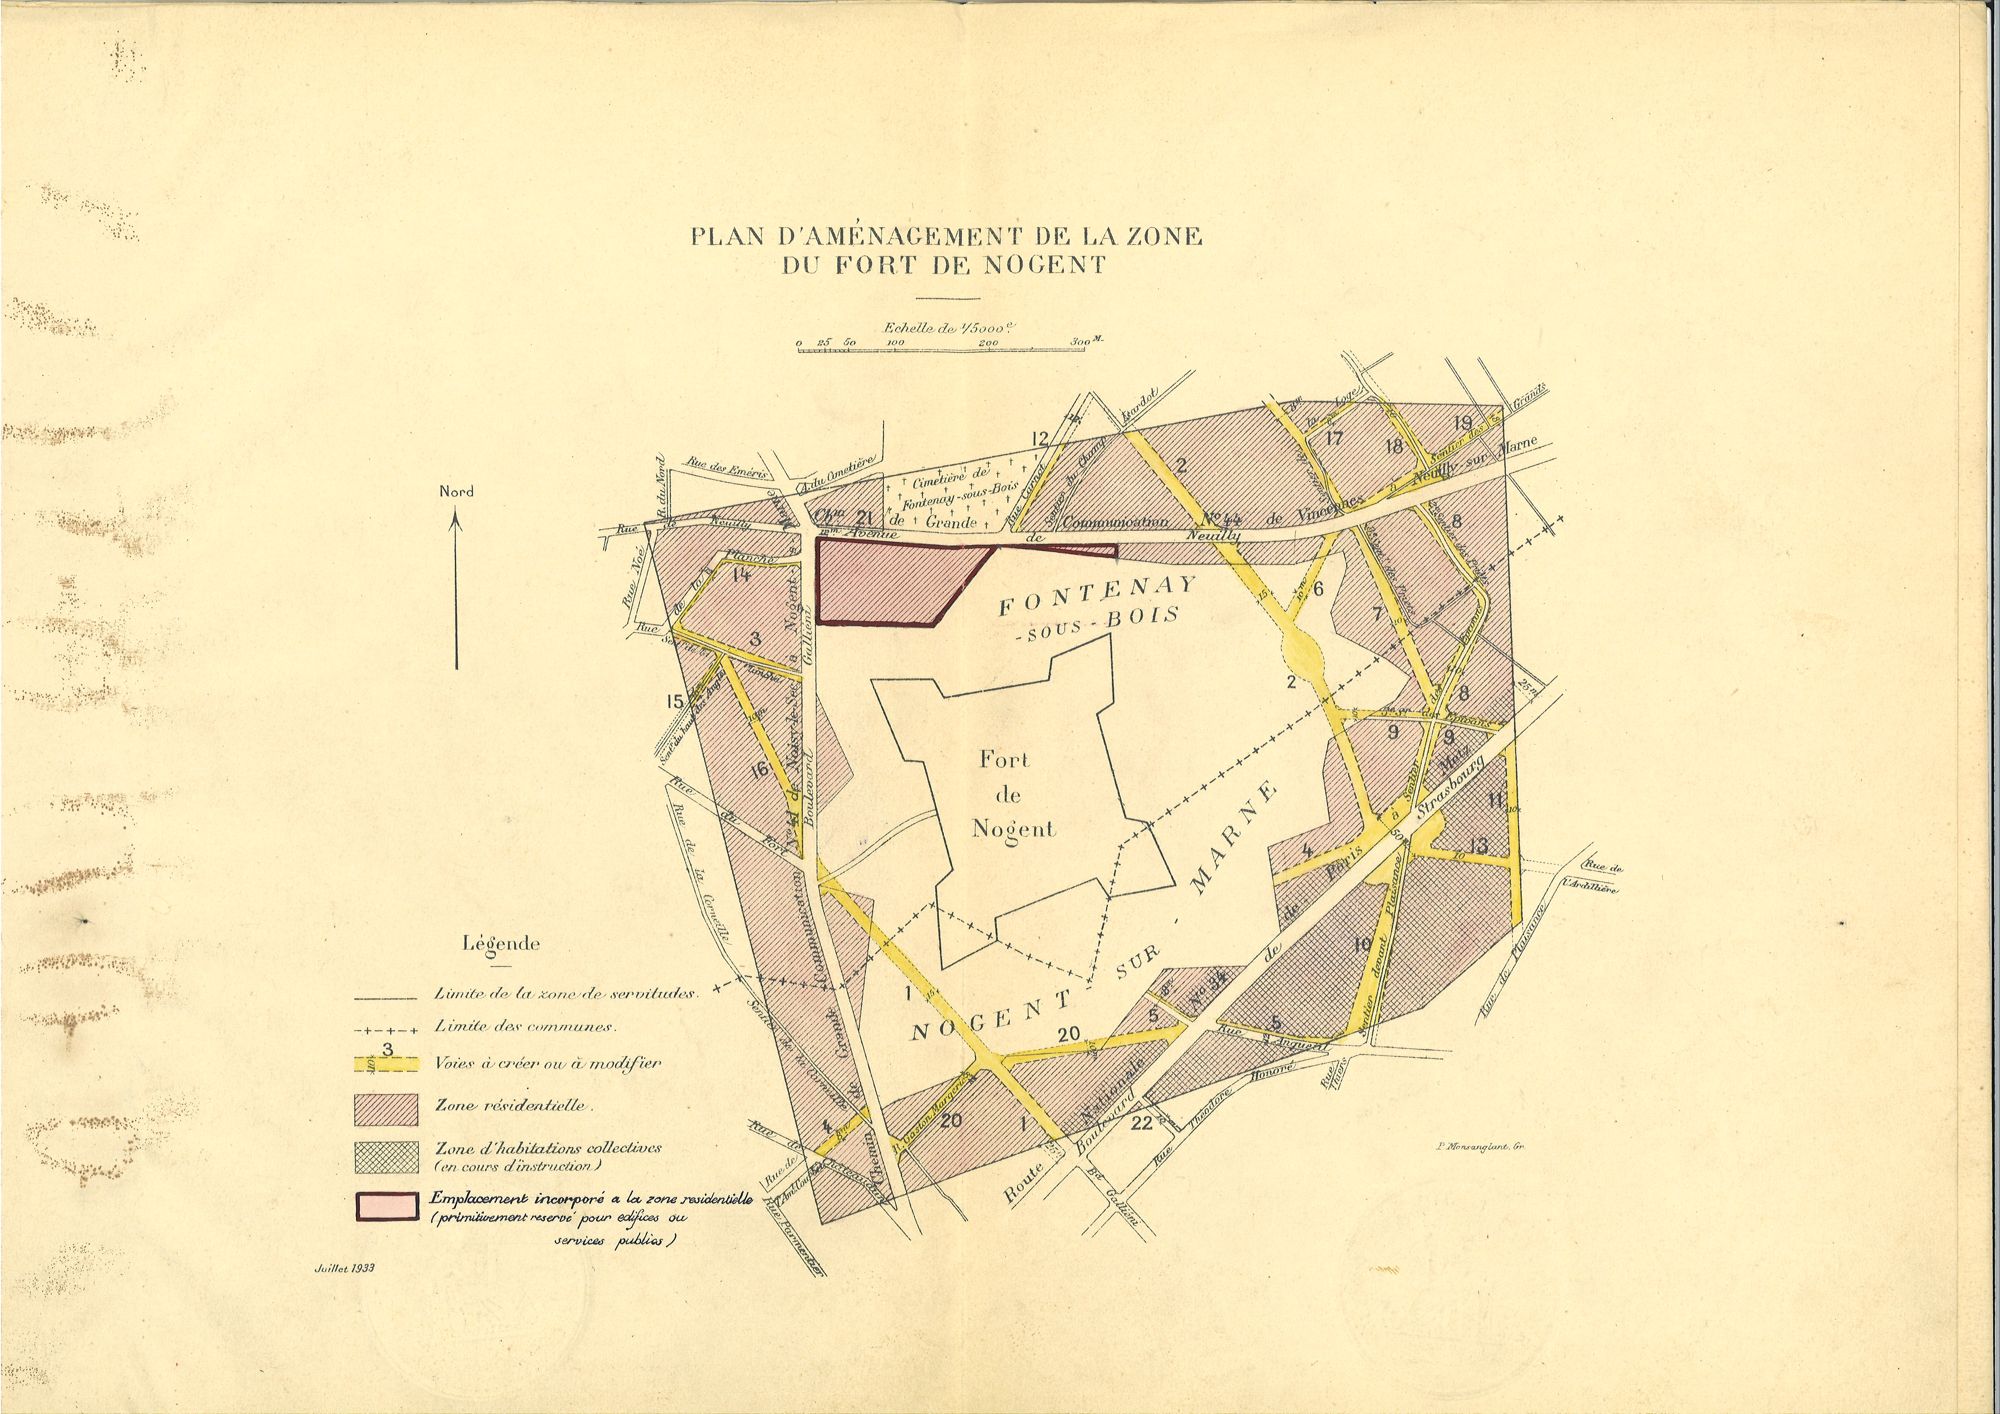 Plan d'aménagement de la zone du fort de Nogent, 1930